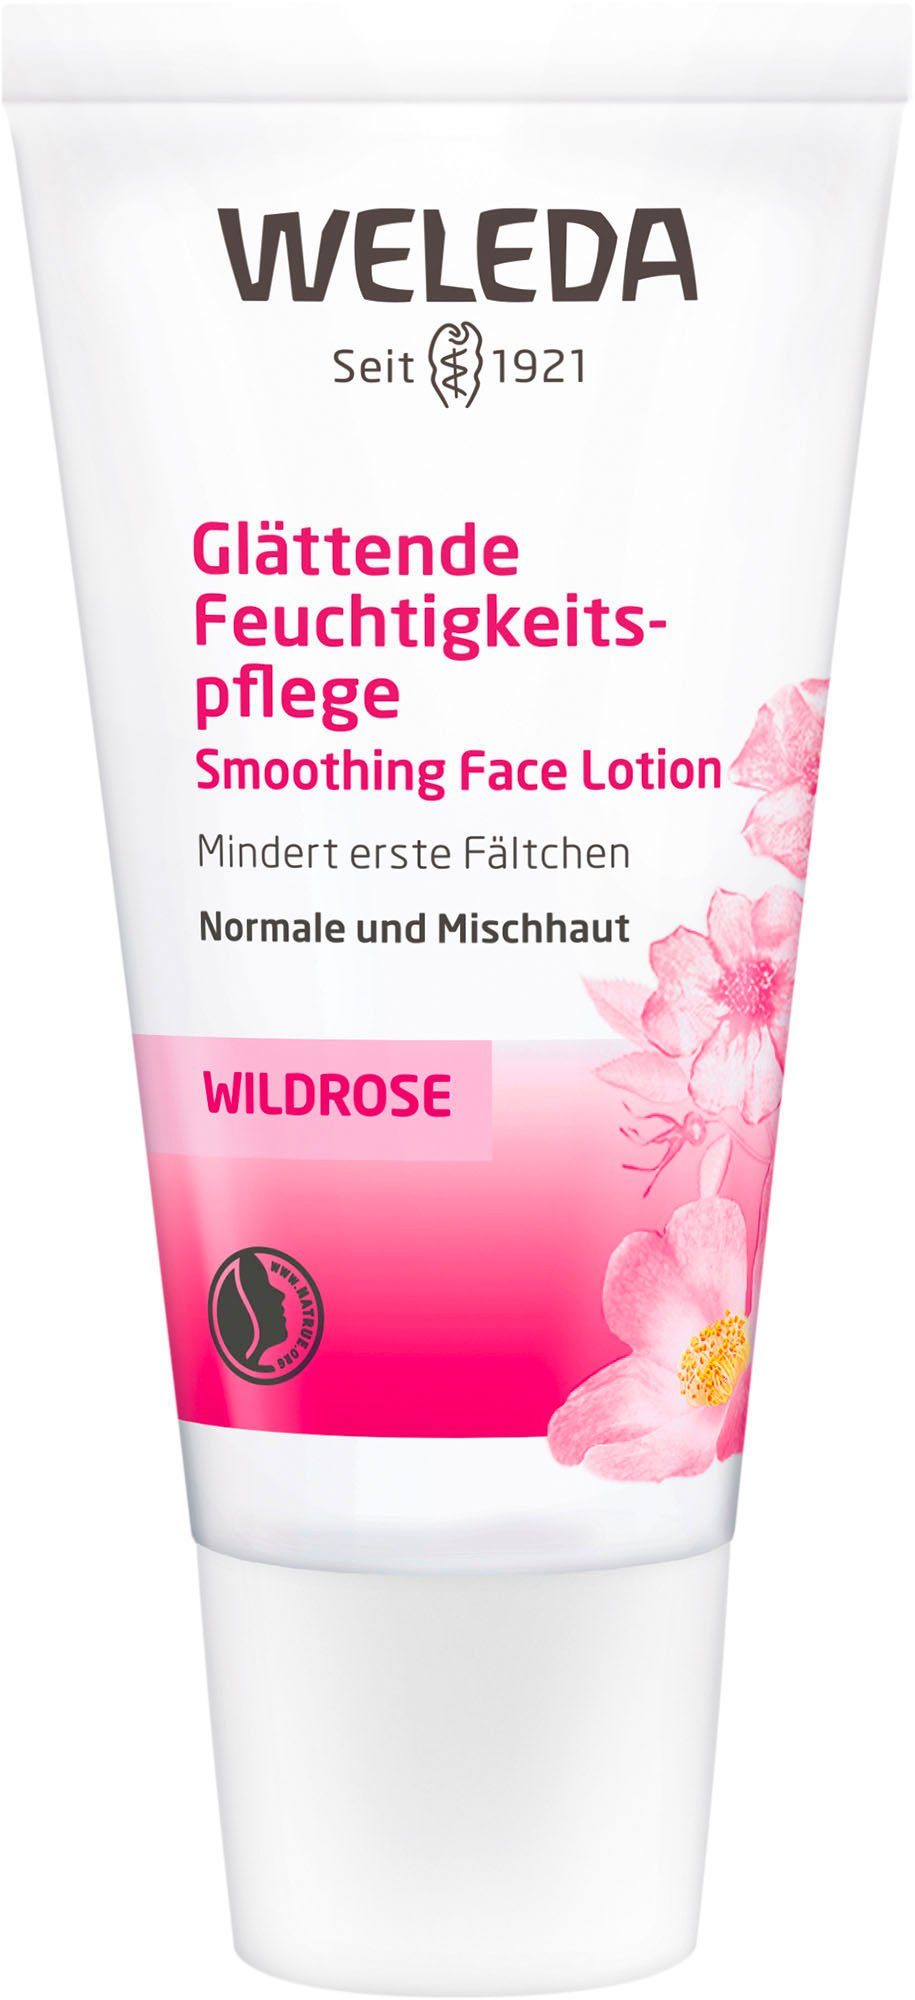 WELEDA Gesichtspflege Wildrose, 30 ml online kaufen | OTTO